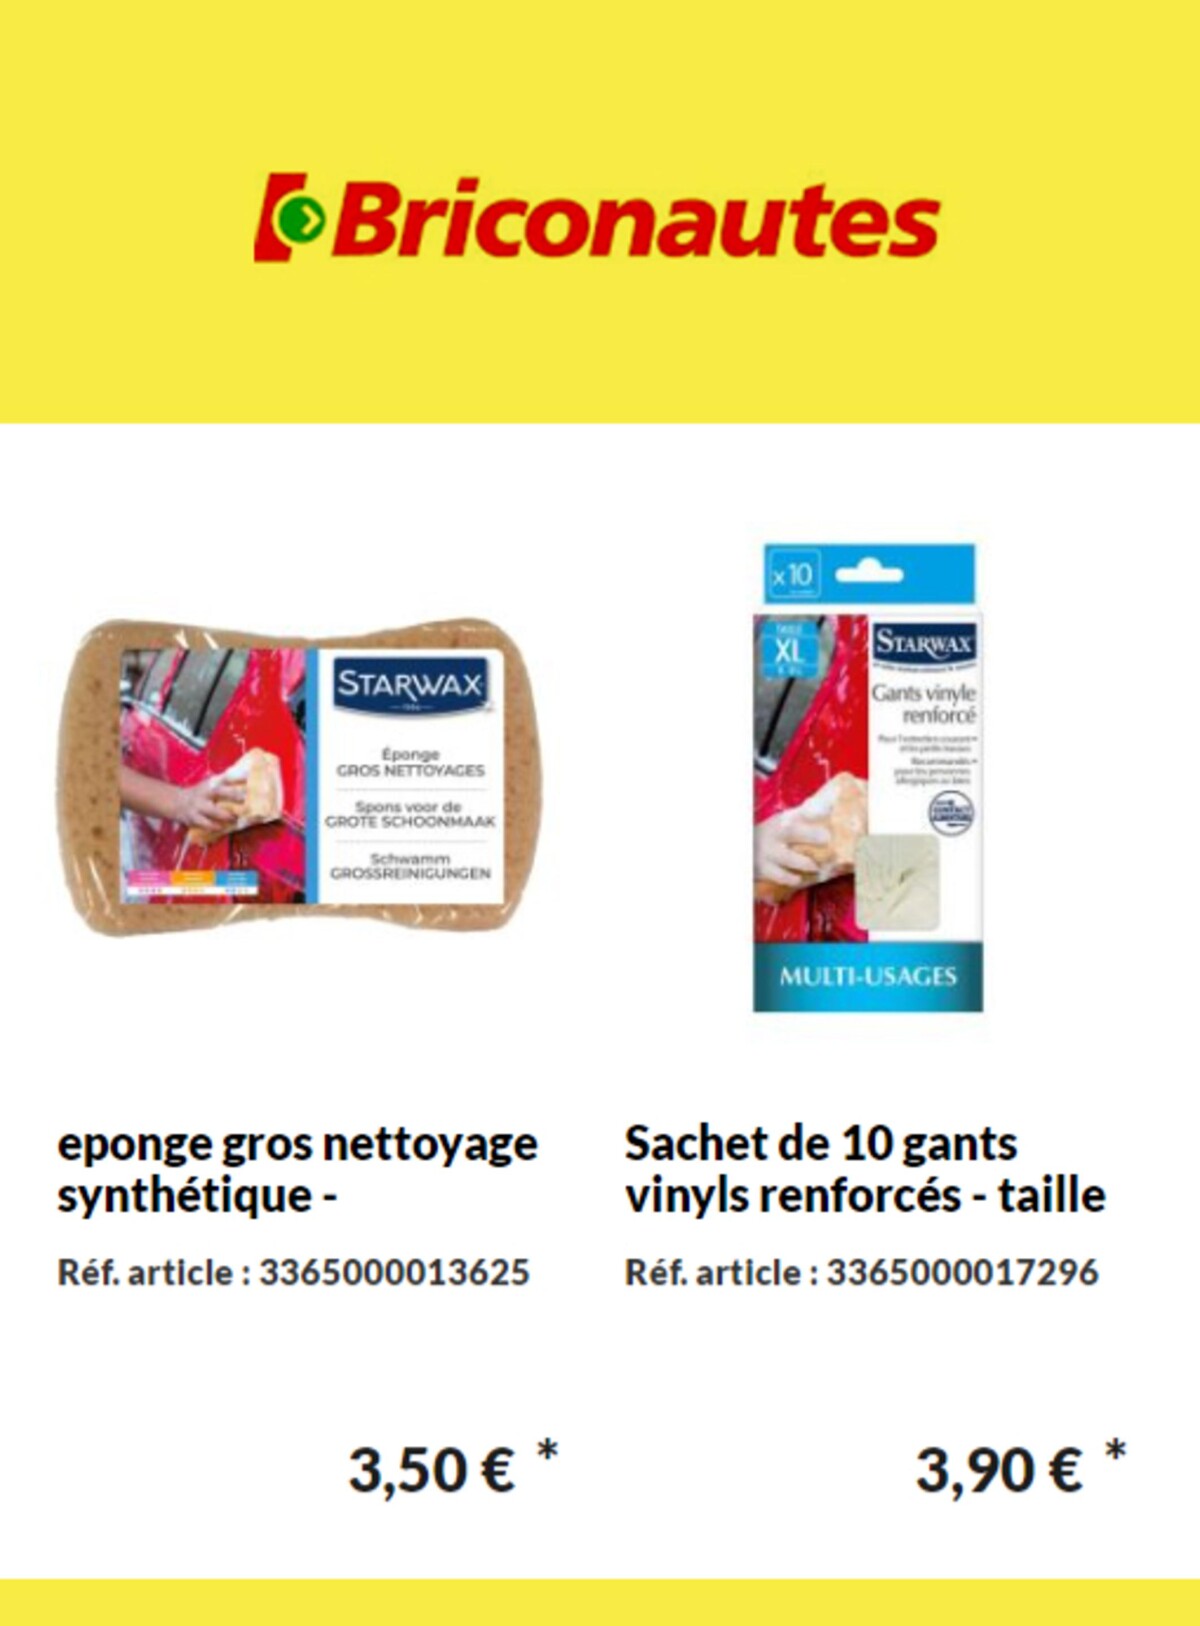 Catalogue Nouveaux produits Les Briconautes, page 00003